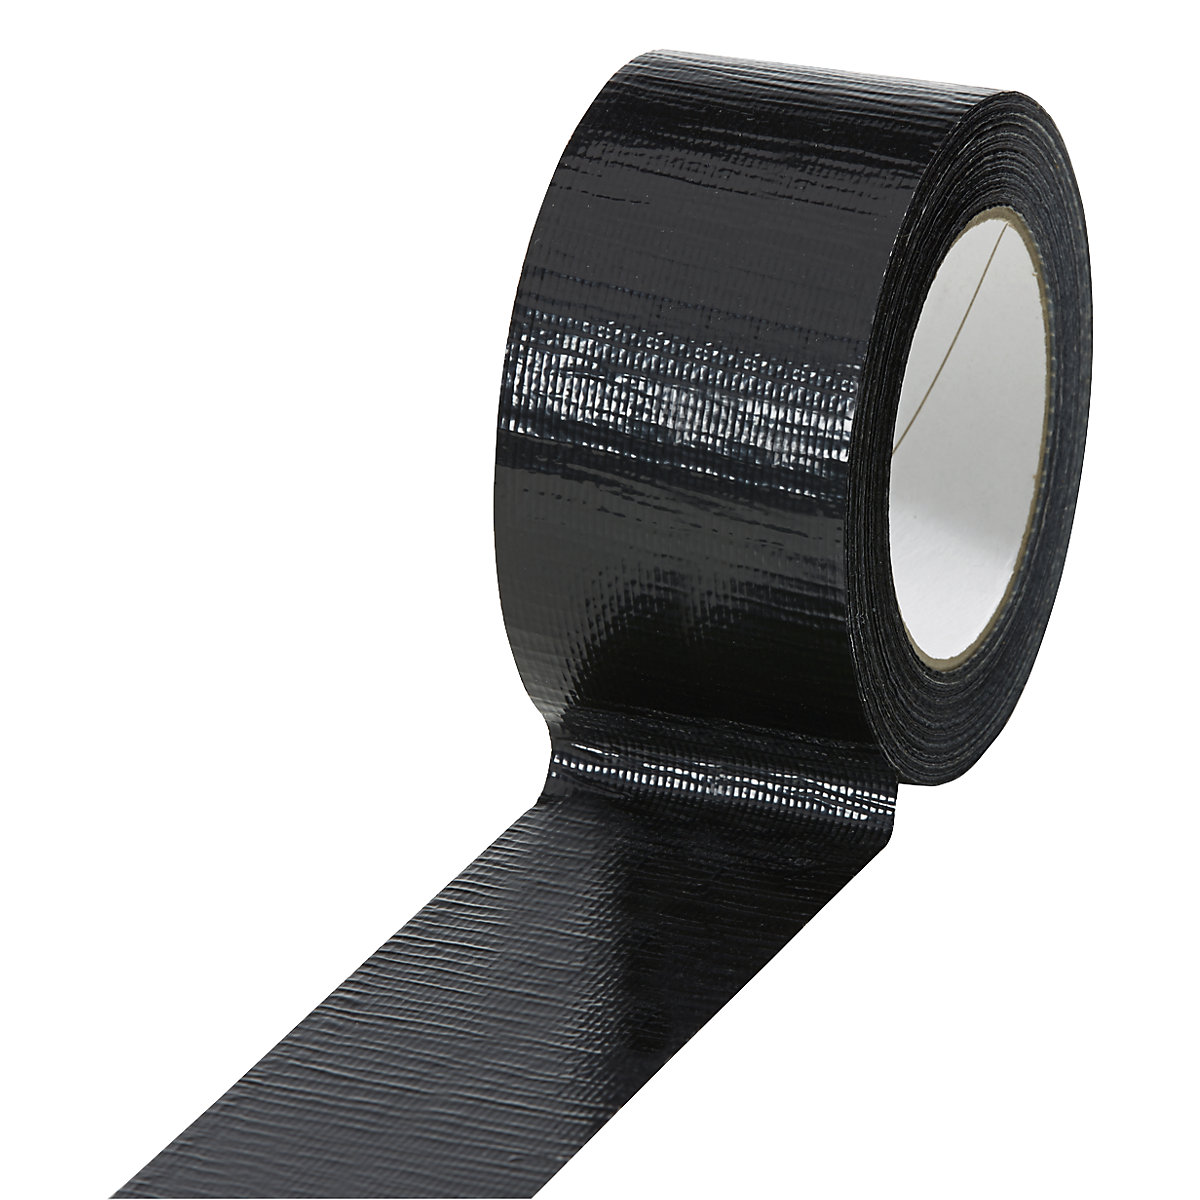 Traka od tkanine, u različitim bojama, pak. 18 rola, u crnoj boji, širina trake 50 mm